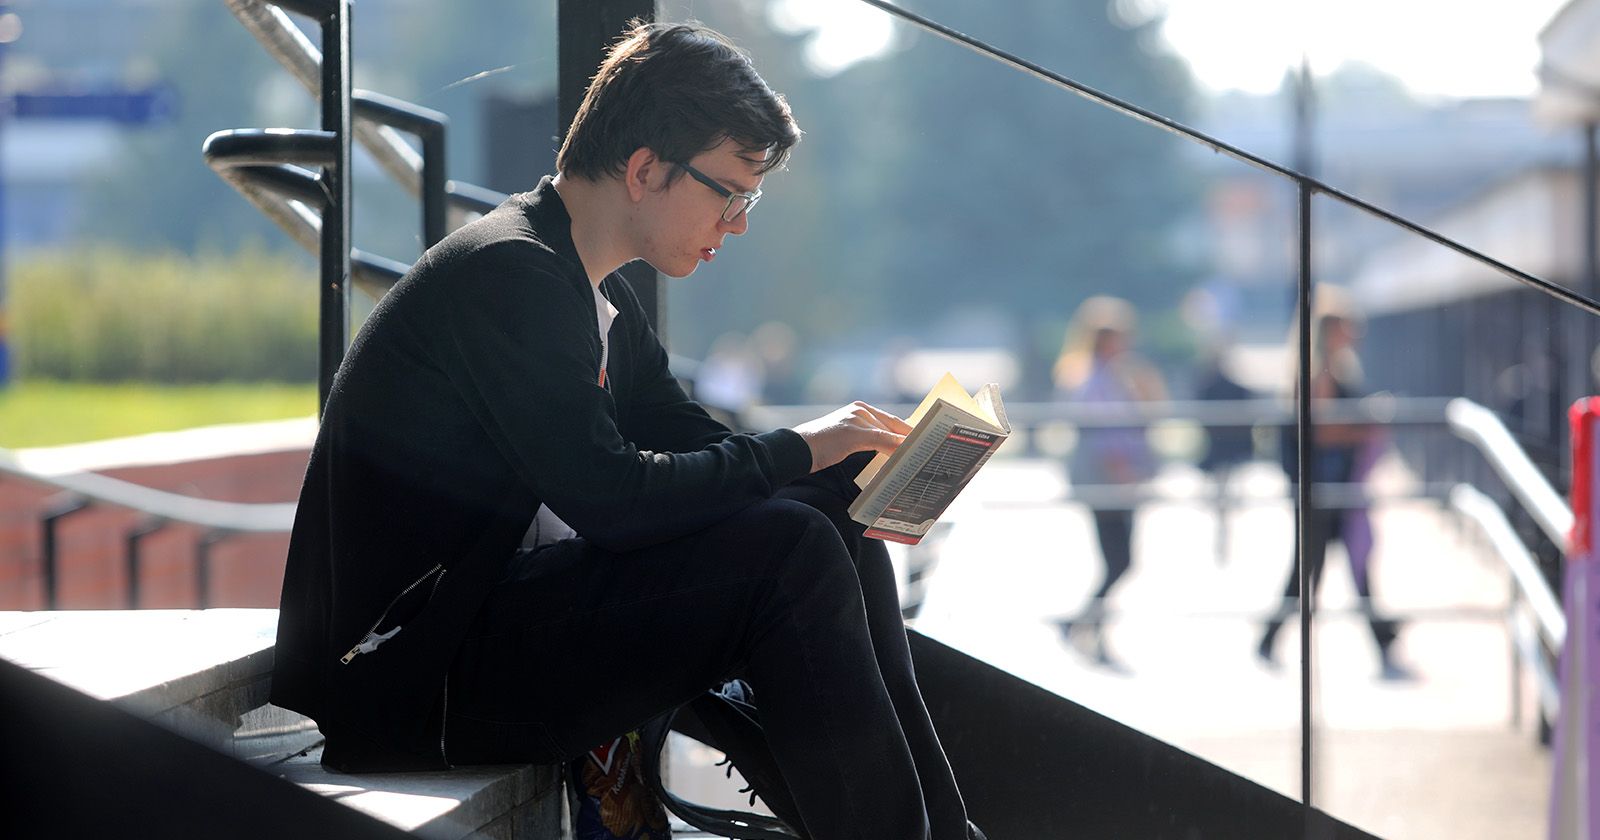  Osoba siedząca na schodzach i czytająca książkę